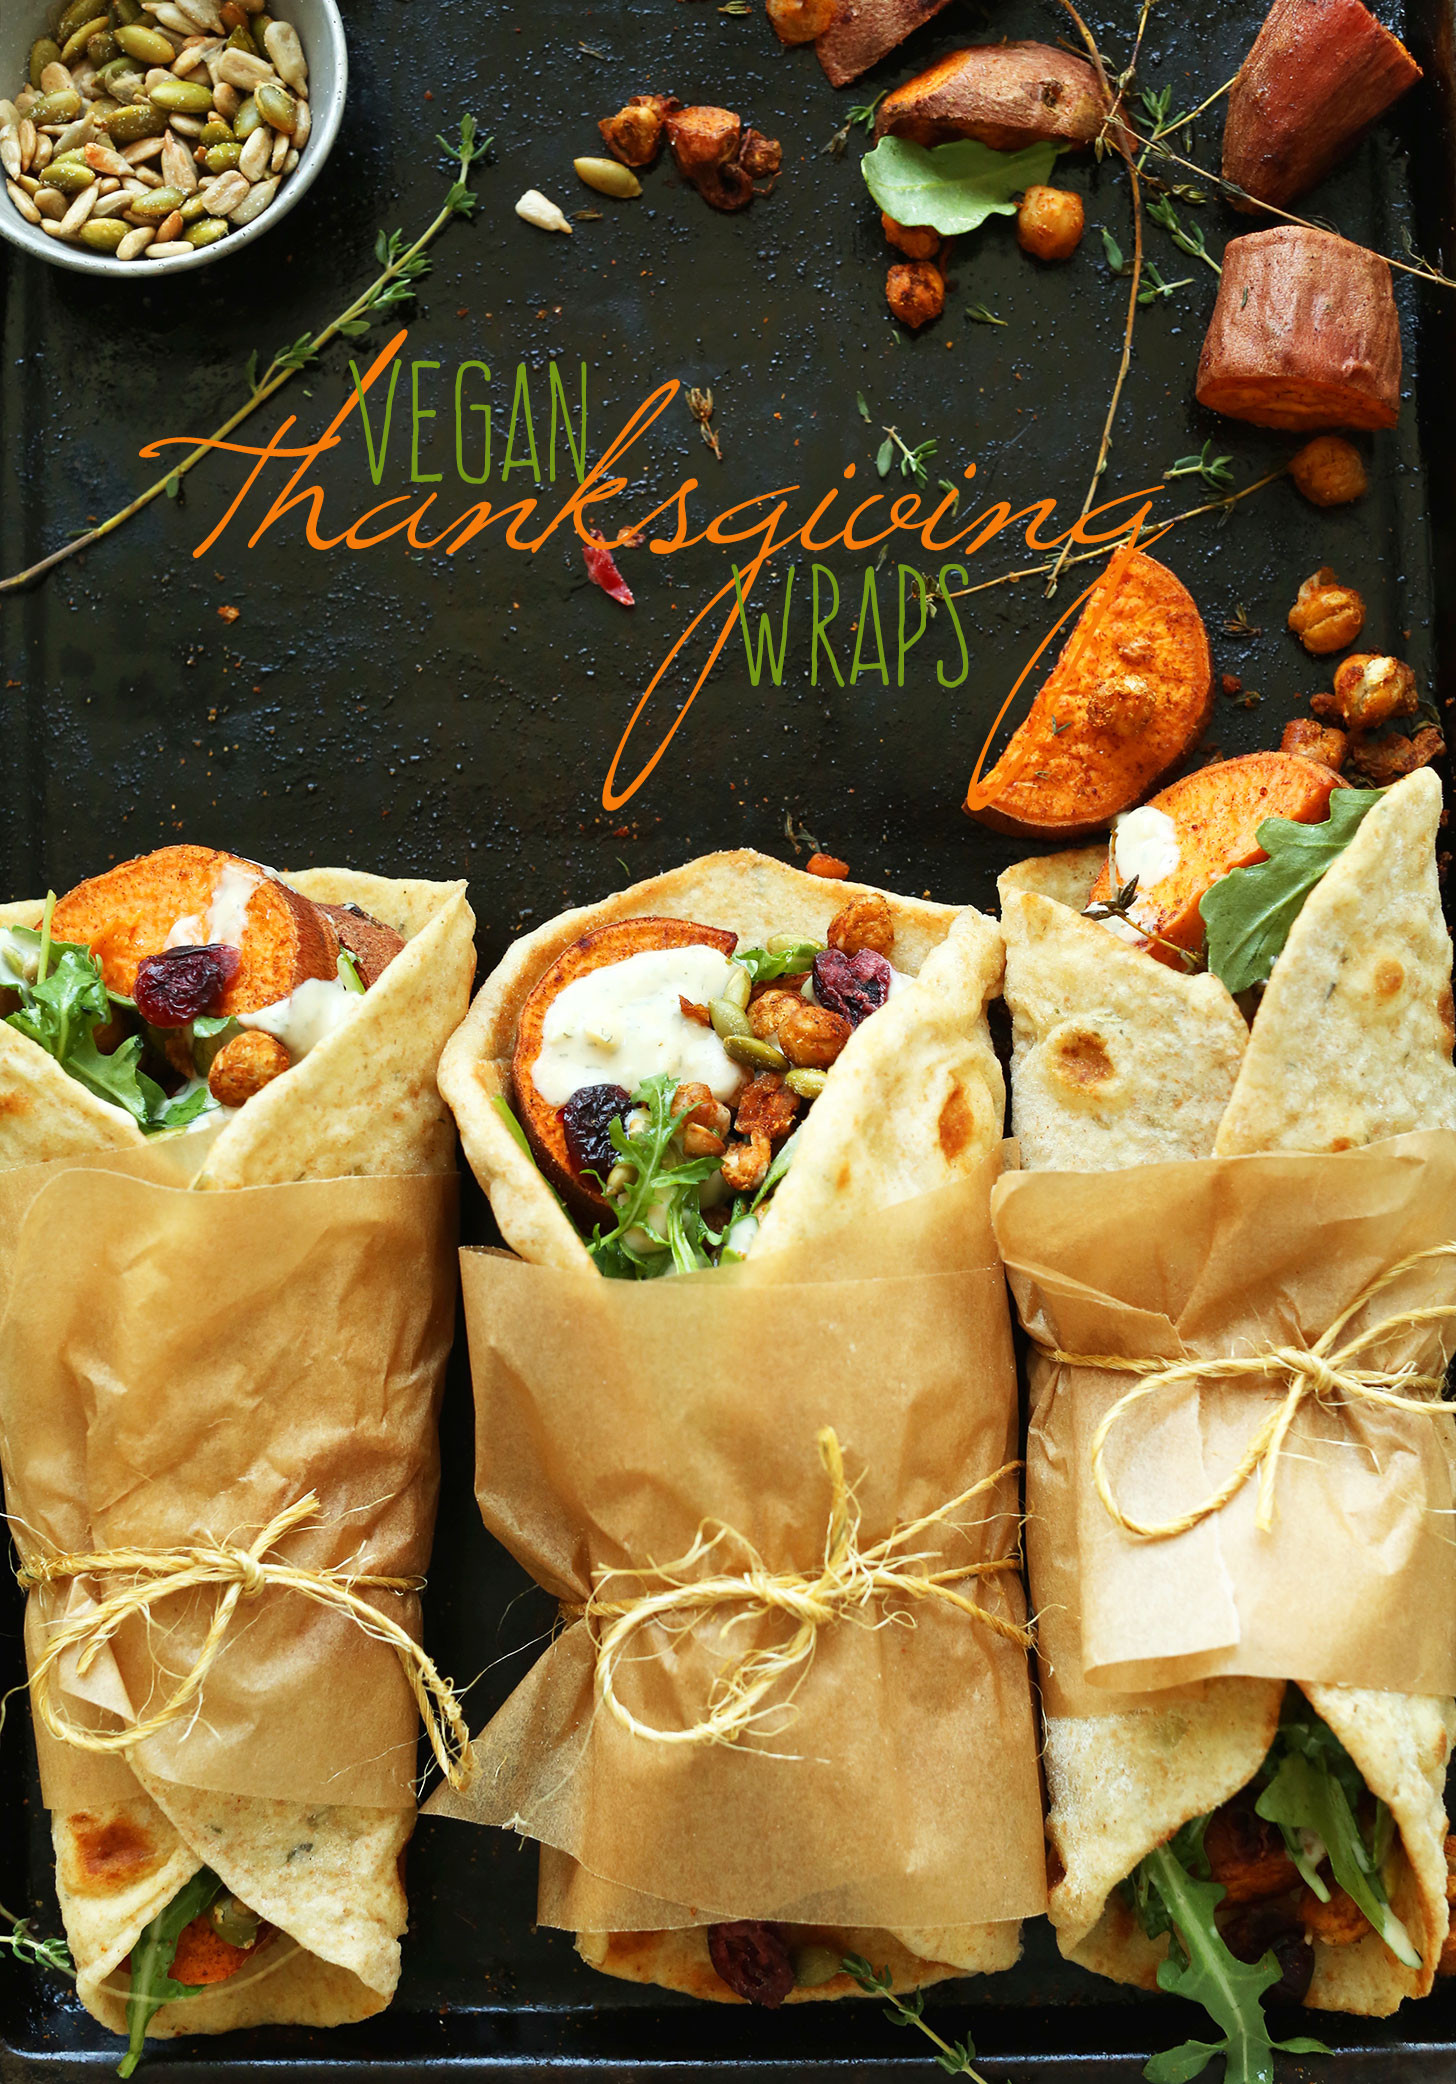 Vegan Thanksgiving Video
 Vegan Thanksgiving Wraps